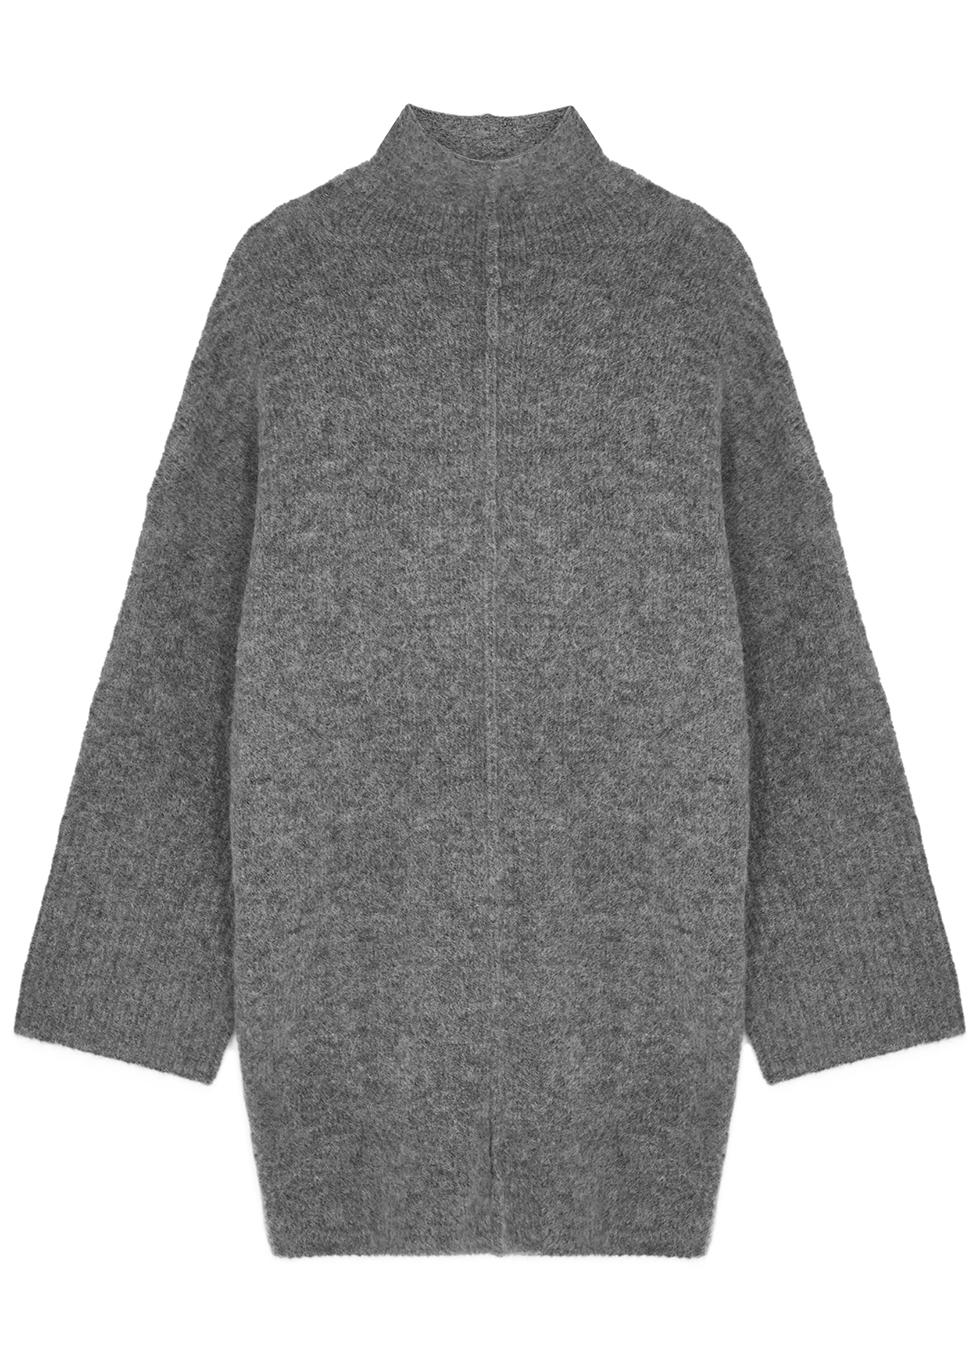 Ember grey knitted jumper by DAY BIRGER ET MIKKELSEN